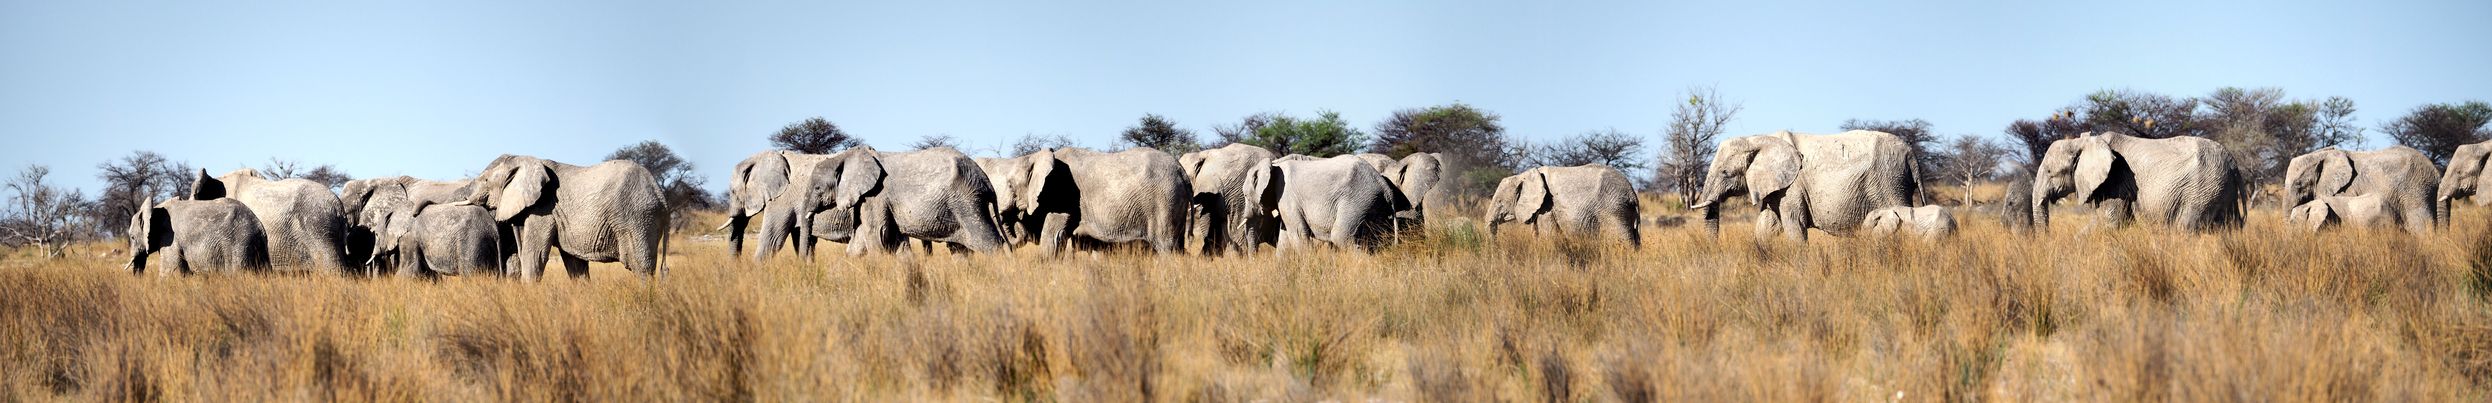 Eléphants des savanes (Loxodonta africana)